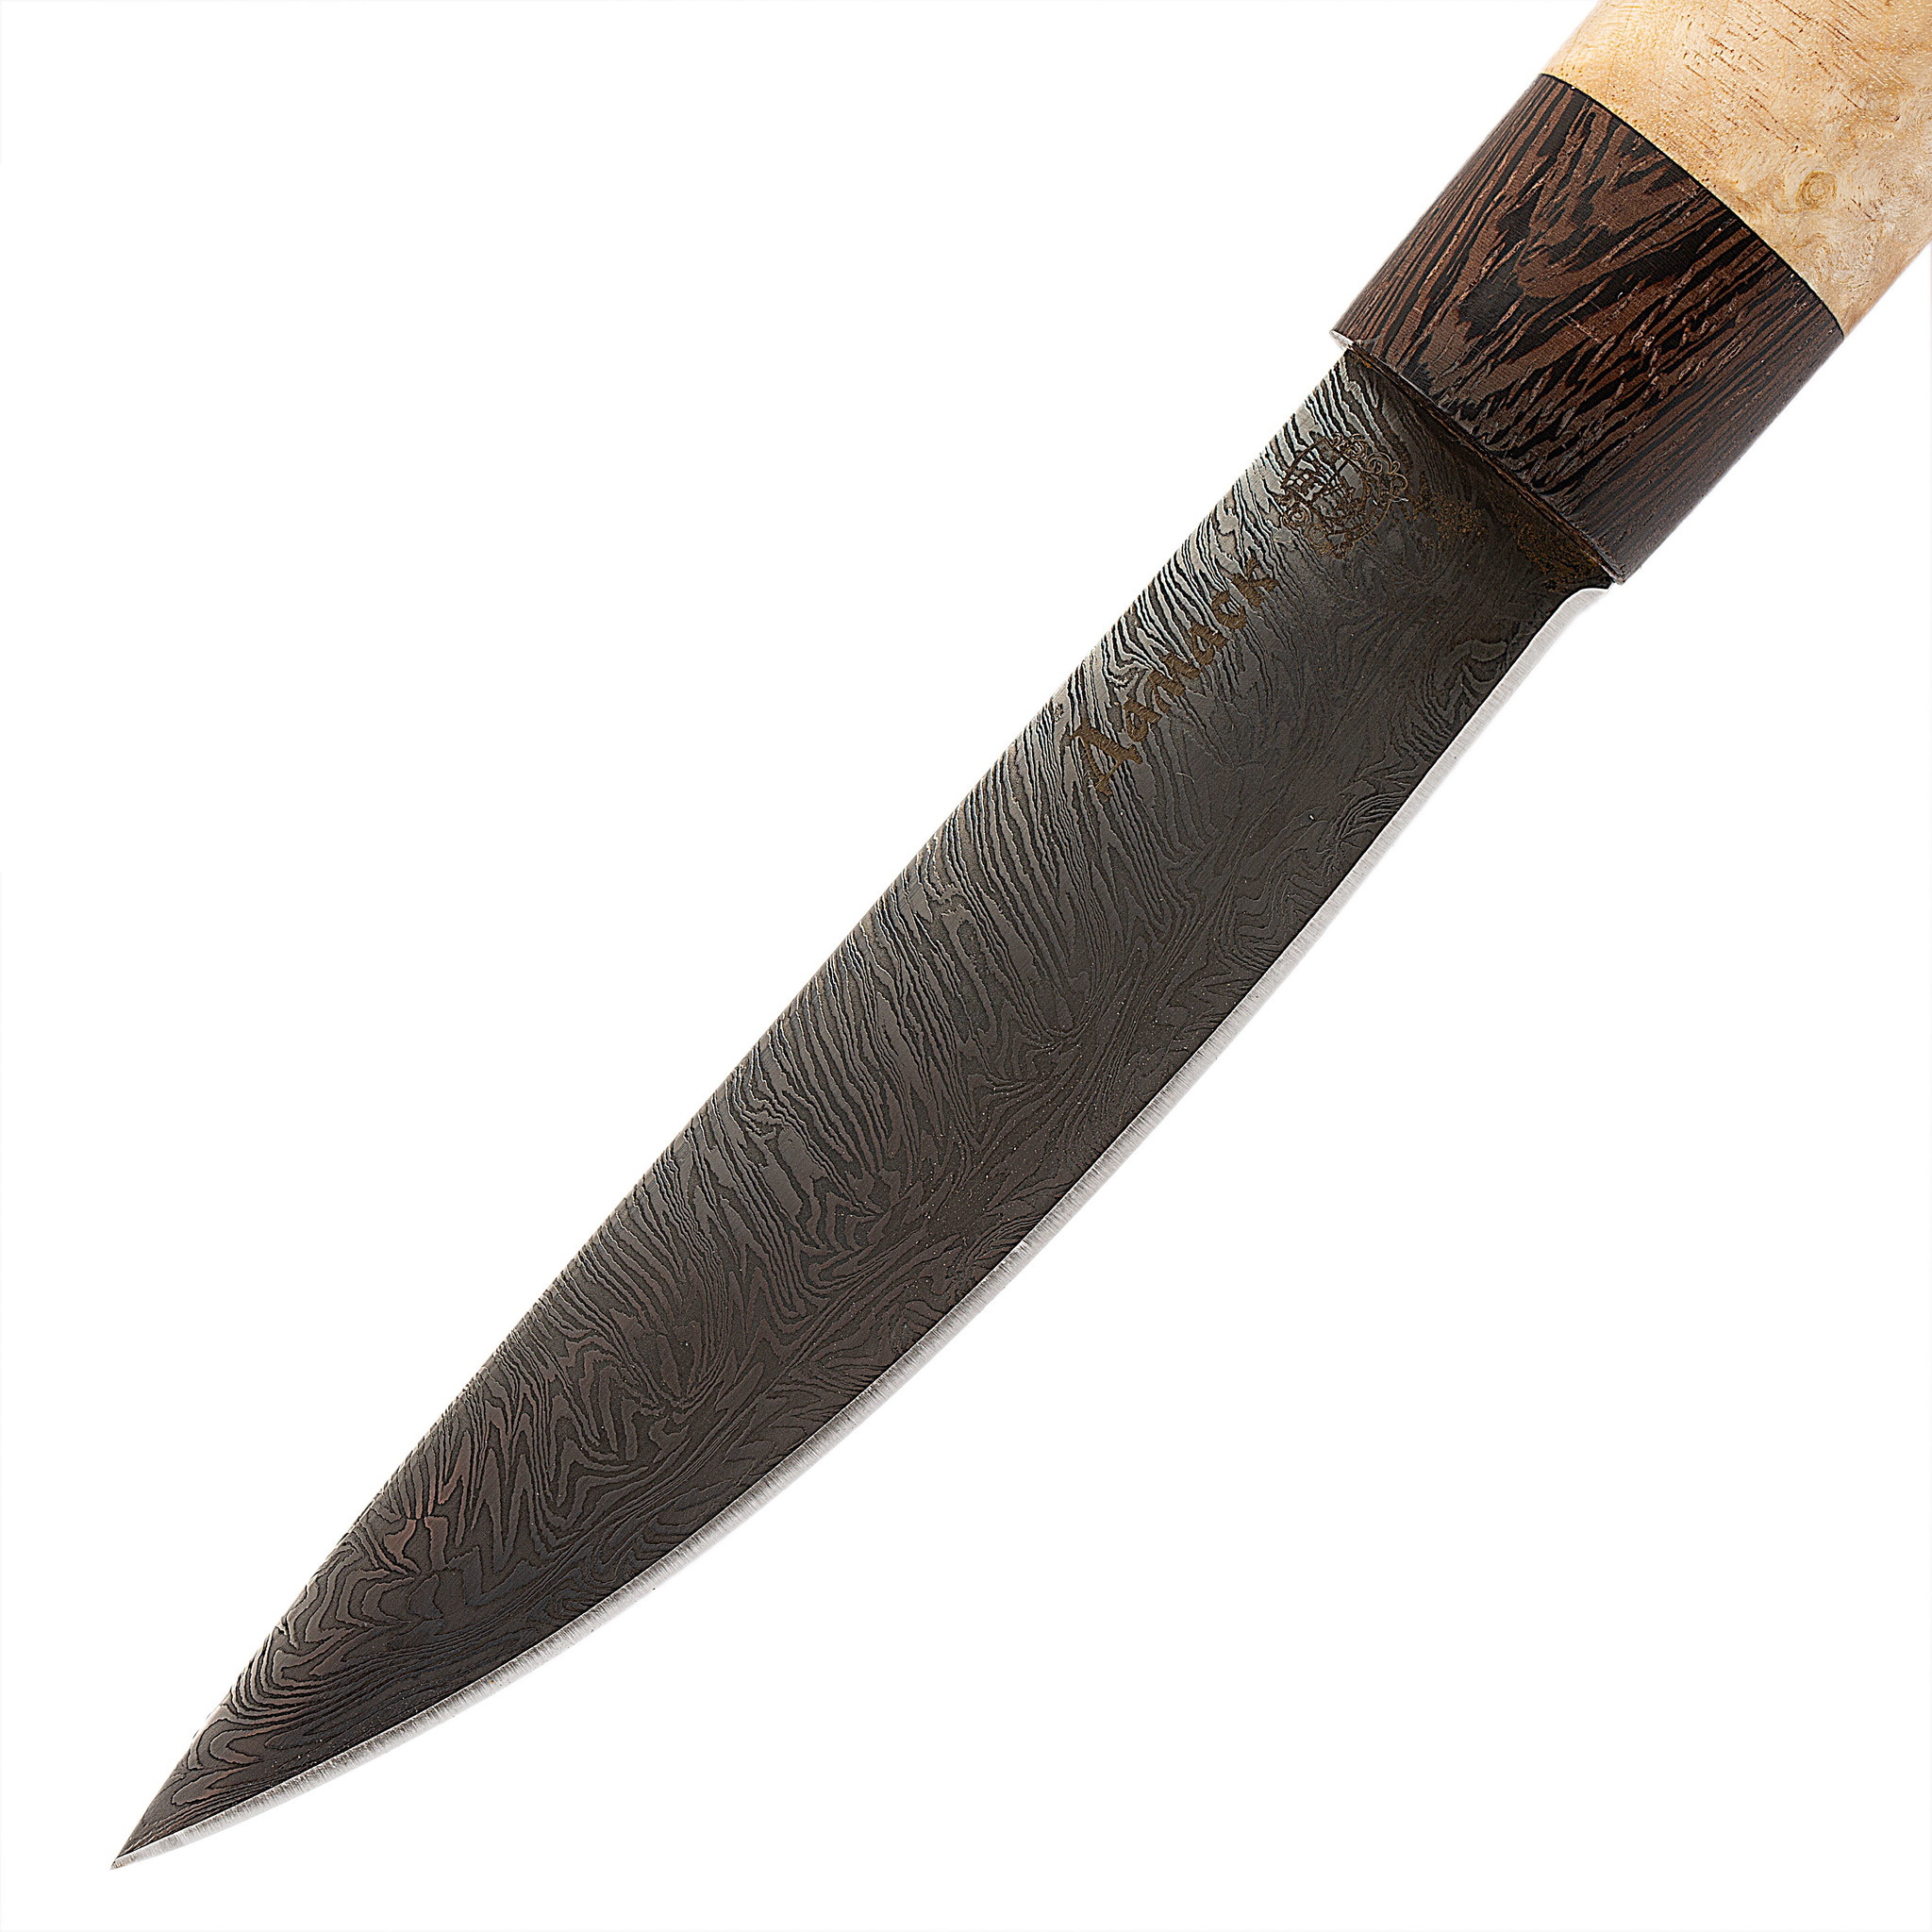 Нож Якутский средний, сталь дамаск, рукоять дерево и кость - фото 2